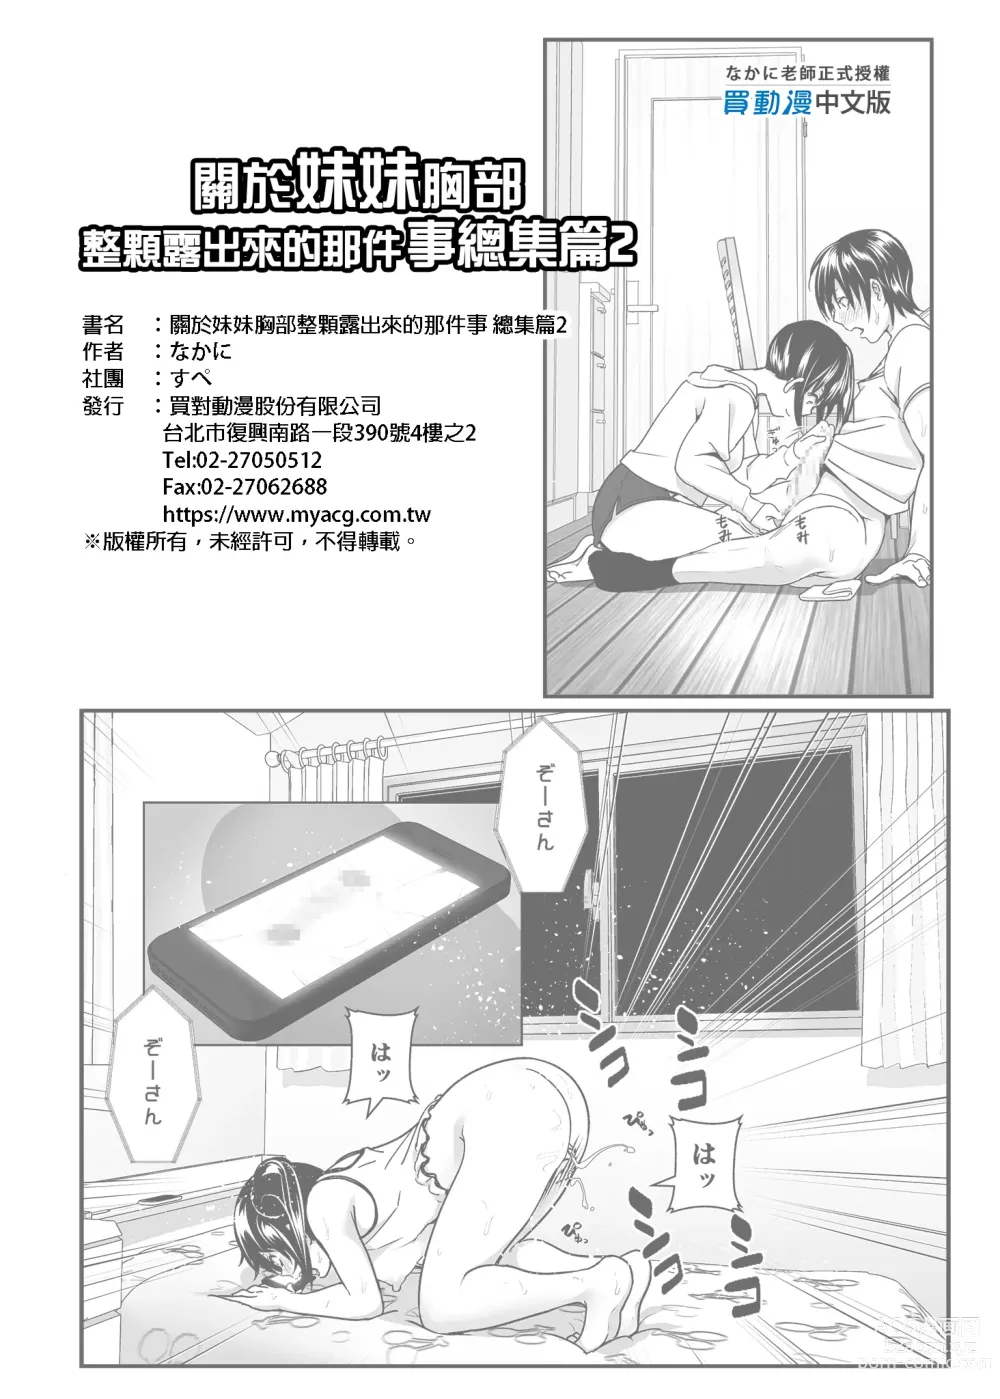 Page 104 of doujinshi 關於妹妹胸部整顆露出來的那件事 總集篇2 (decensored)